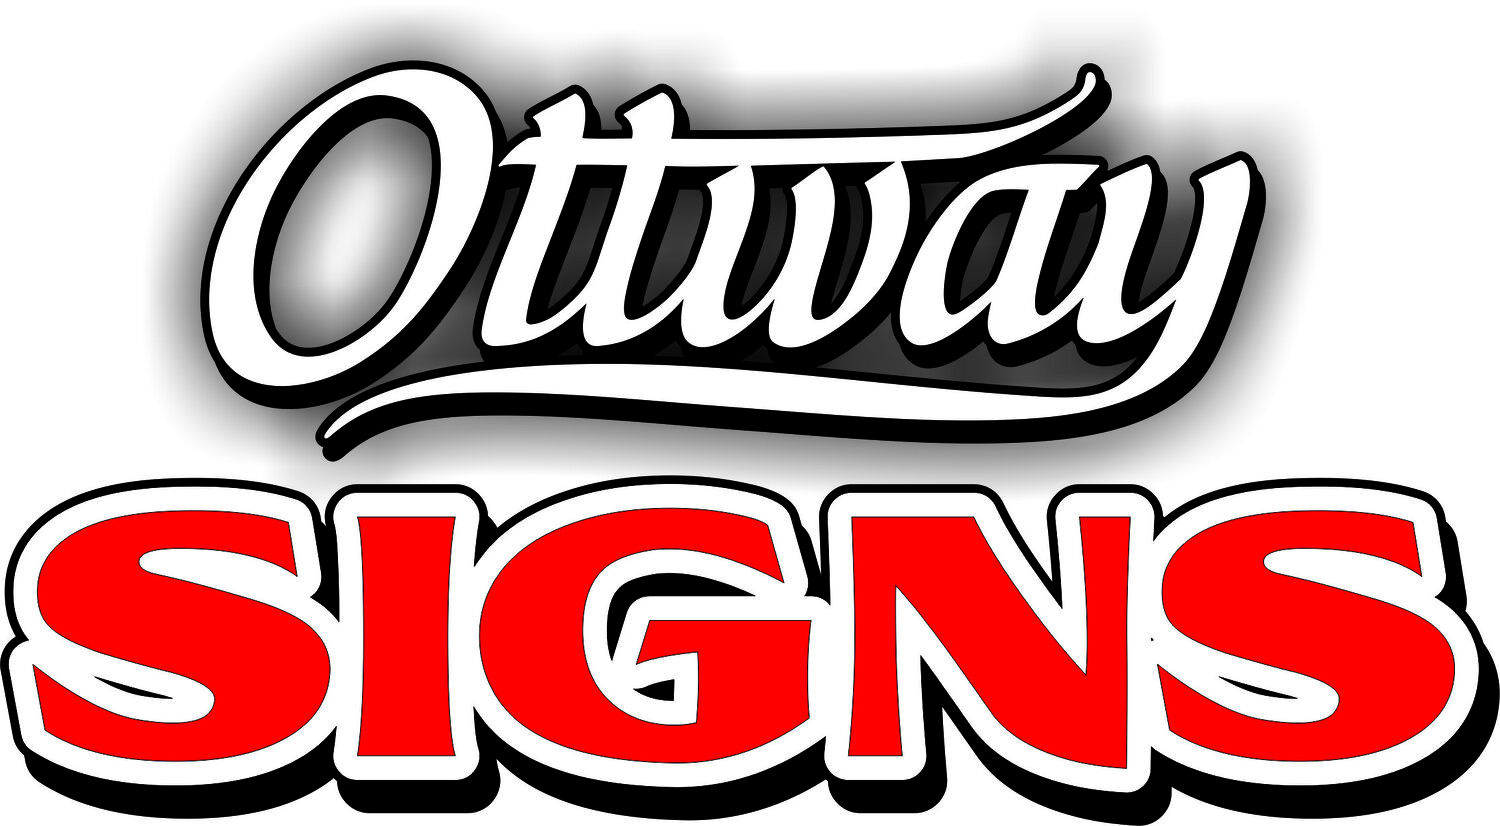 Ottway Signs & Design